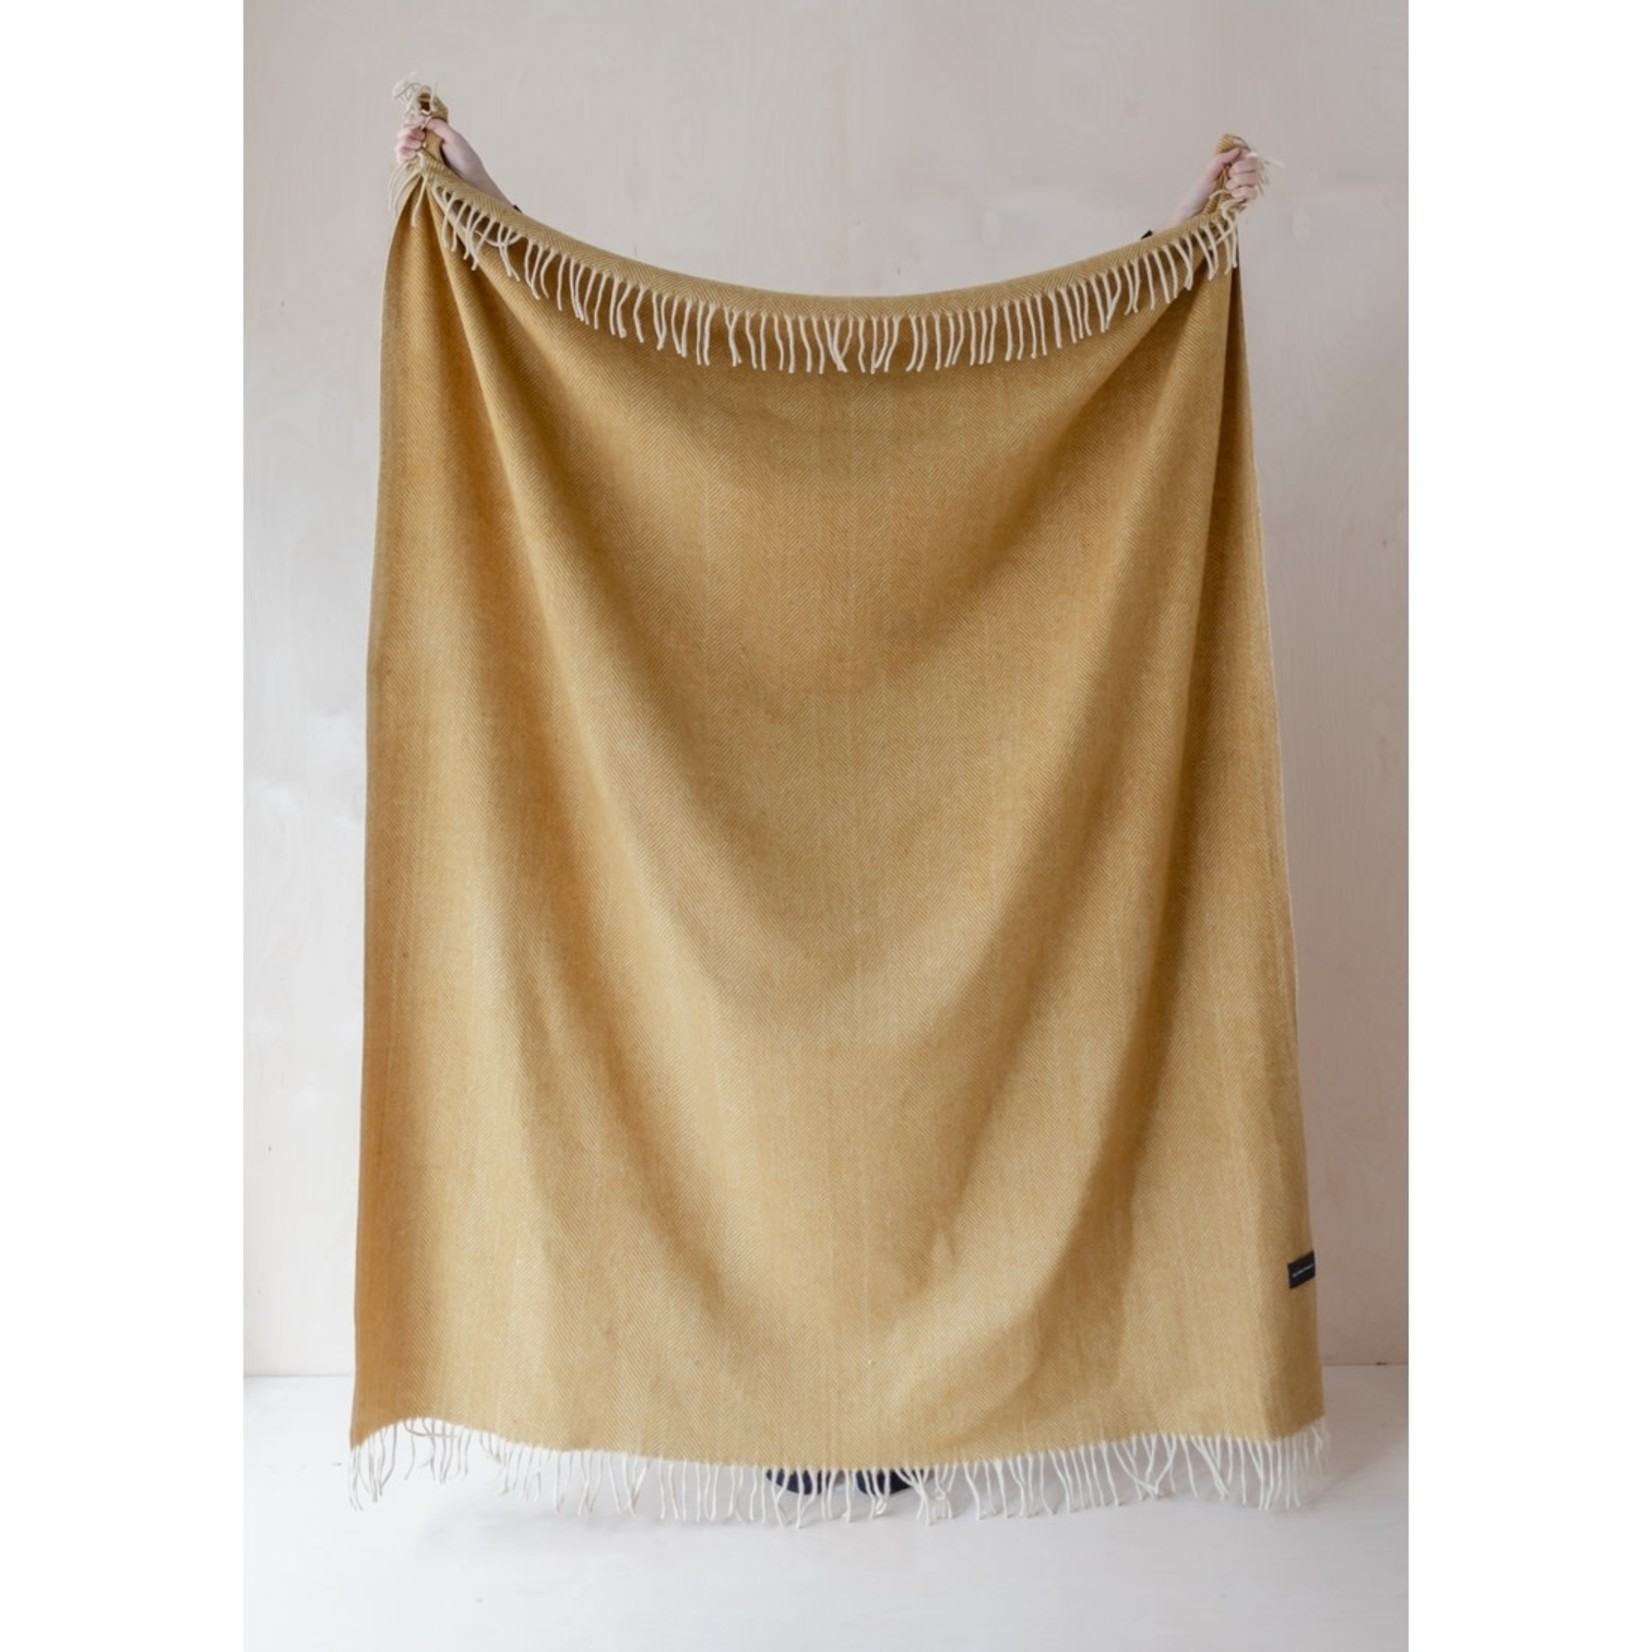 The Tartan Blanket Co. Herringbone Recycled Wool Blanket